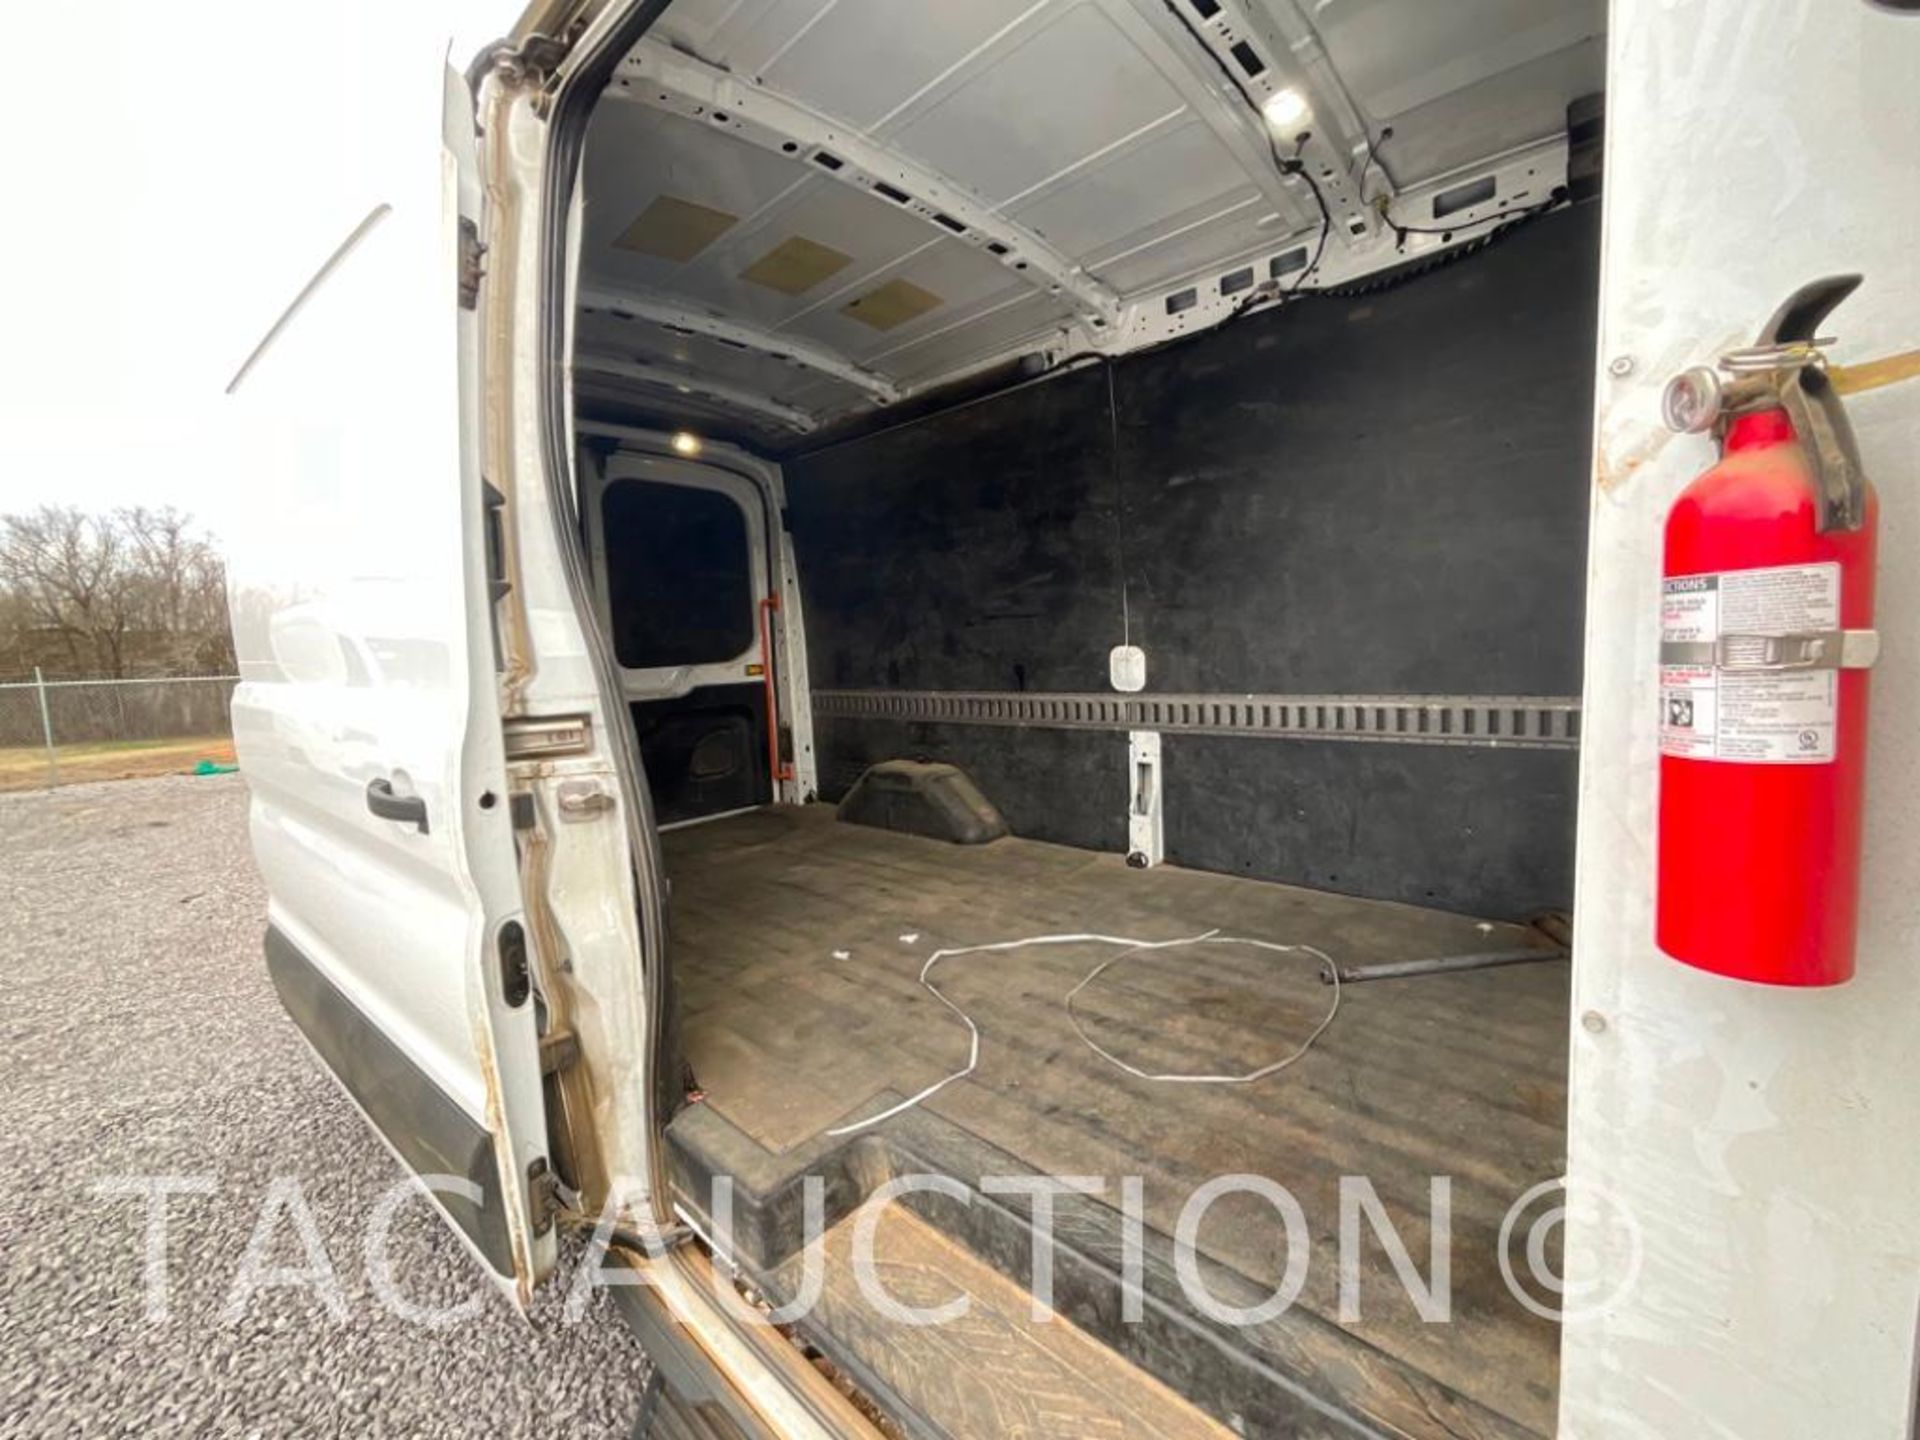 2019 Ford Transit 150 Cargo Van - Image 19 of 33